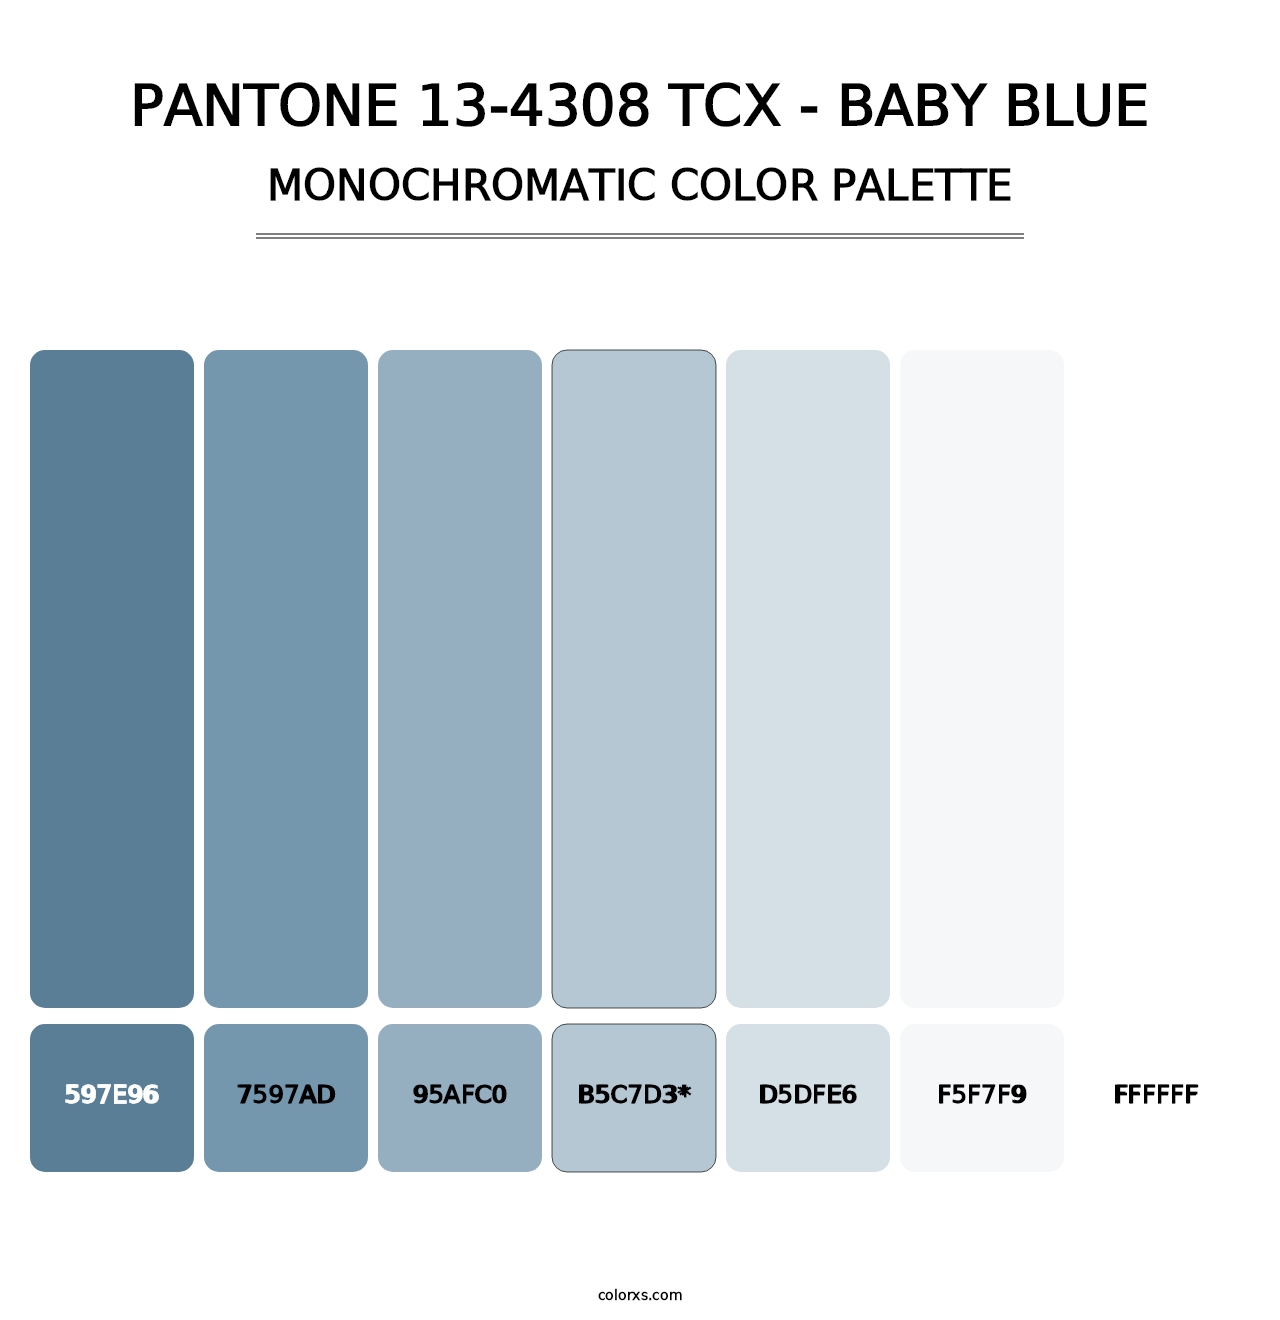 PANTONE 13-4308 TCX - Baby Blue - Monochromatic Color Palette